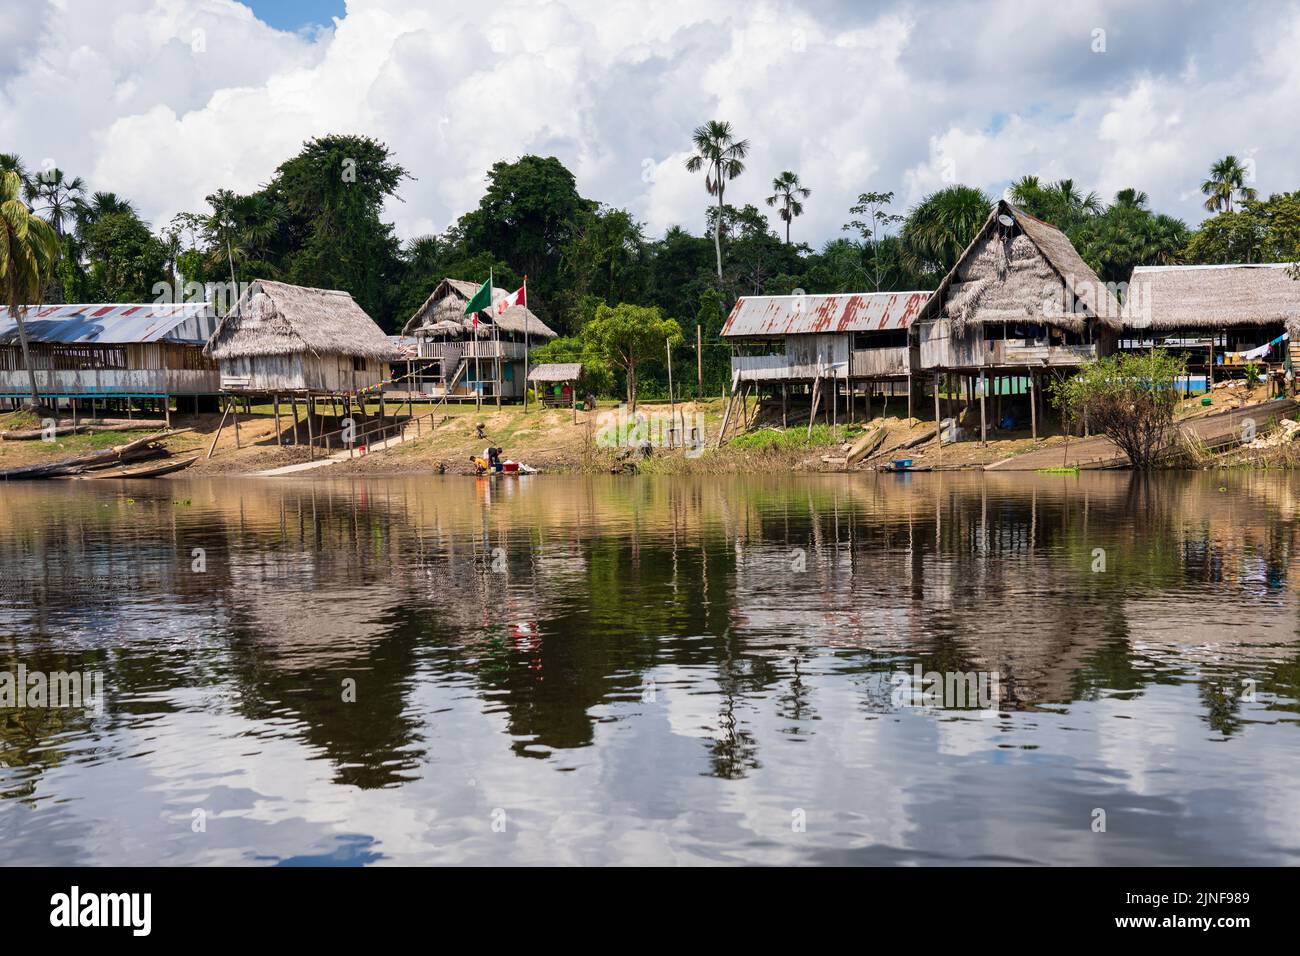 Hütten auf Stelzen sind im Allgemeinen die akzeptierten Wohnungen im peruanischen Amazonas unter den Riberenos Gemeinden Stockfoto